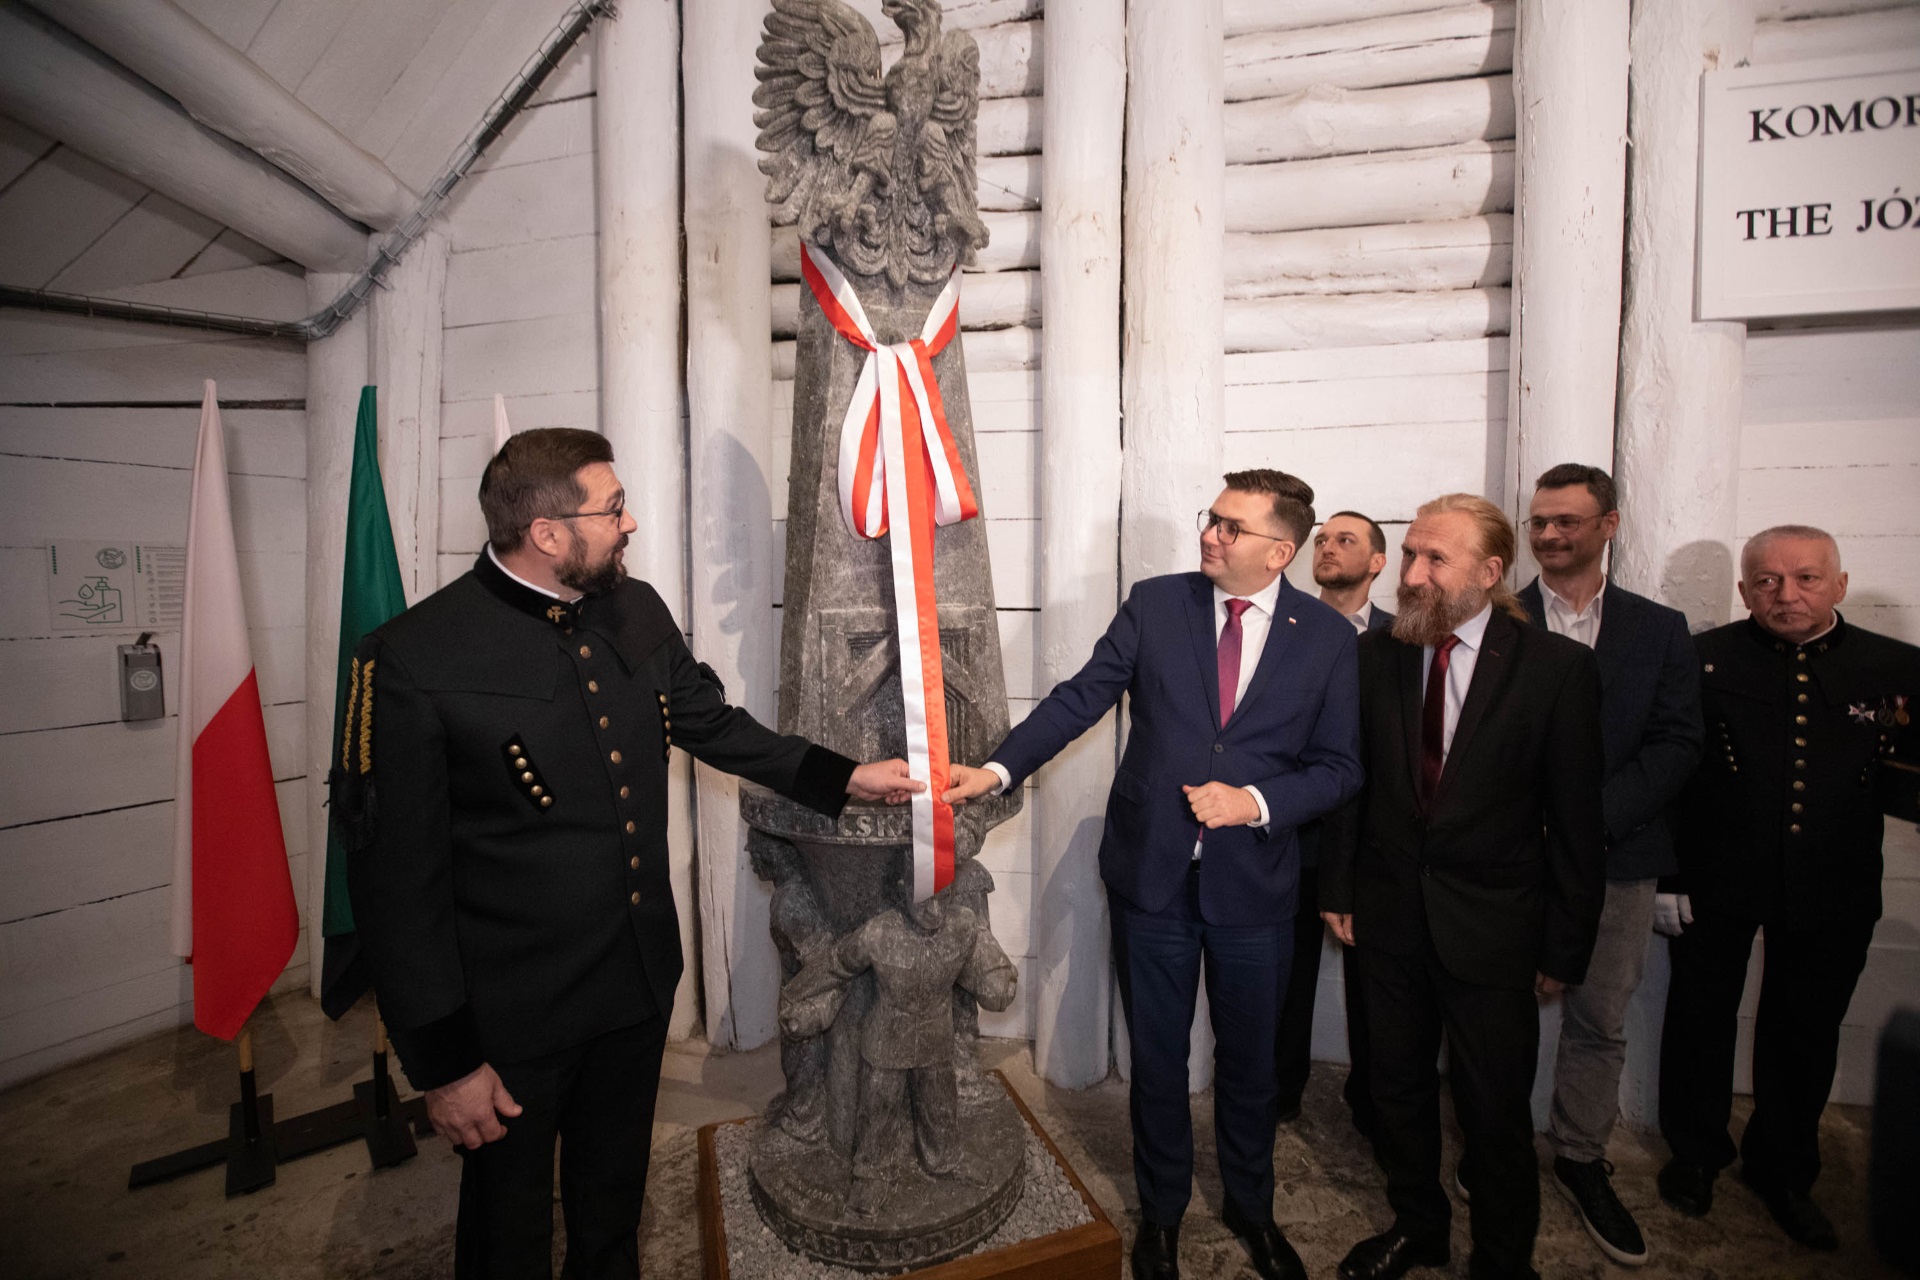 Prezes Paweł Nowka i Wojewoda Łukasz Kmita zdejmują z rzeźby biało-czerwoną szarfę